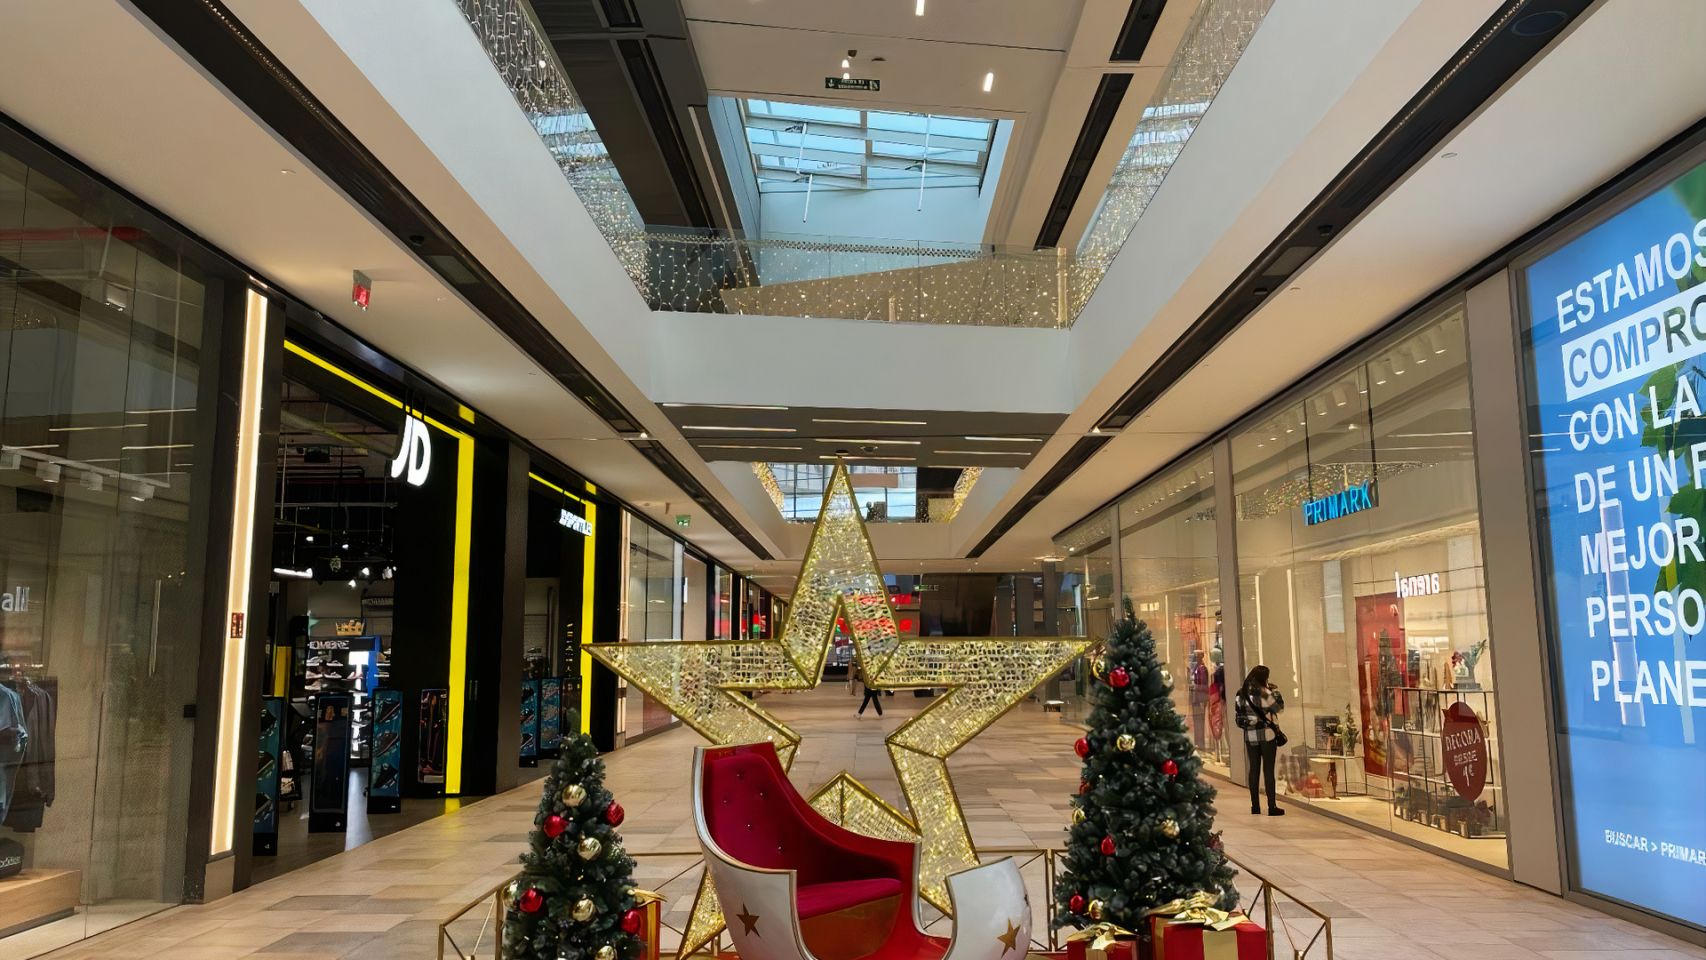 Decoración navideña en el centro comercial Vialia Vigo.